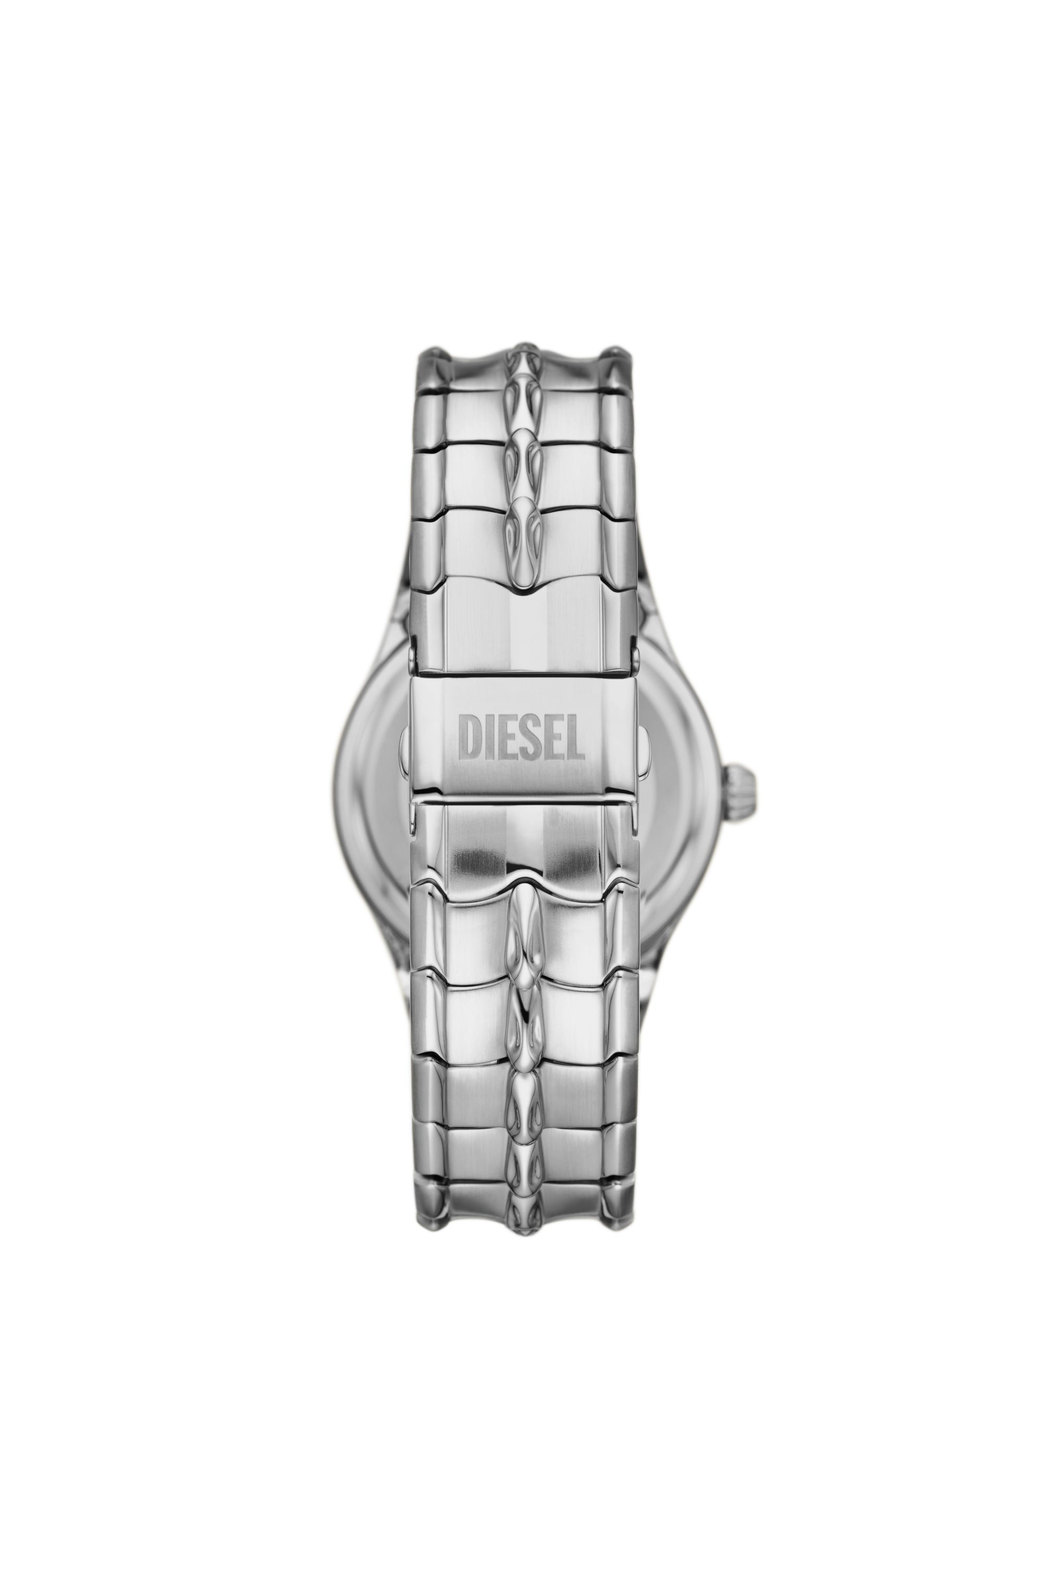 Diesel Vert Three-Hand Date Stainless Steel Watch